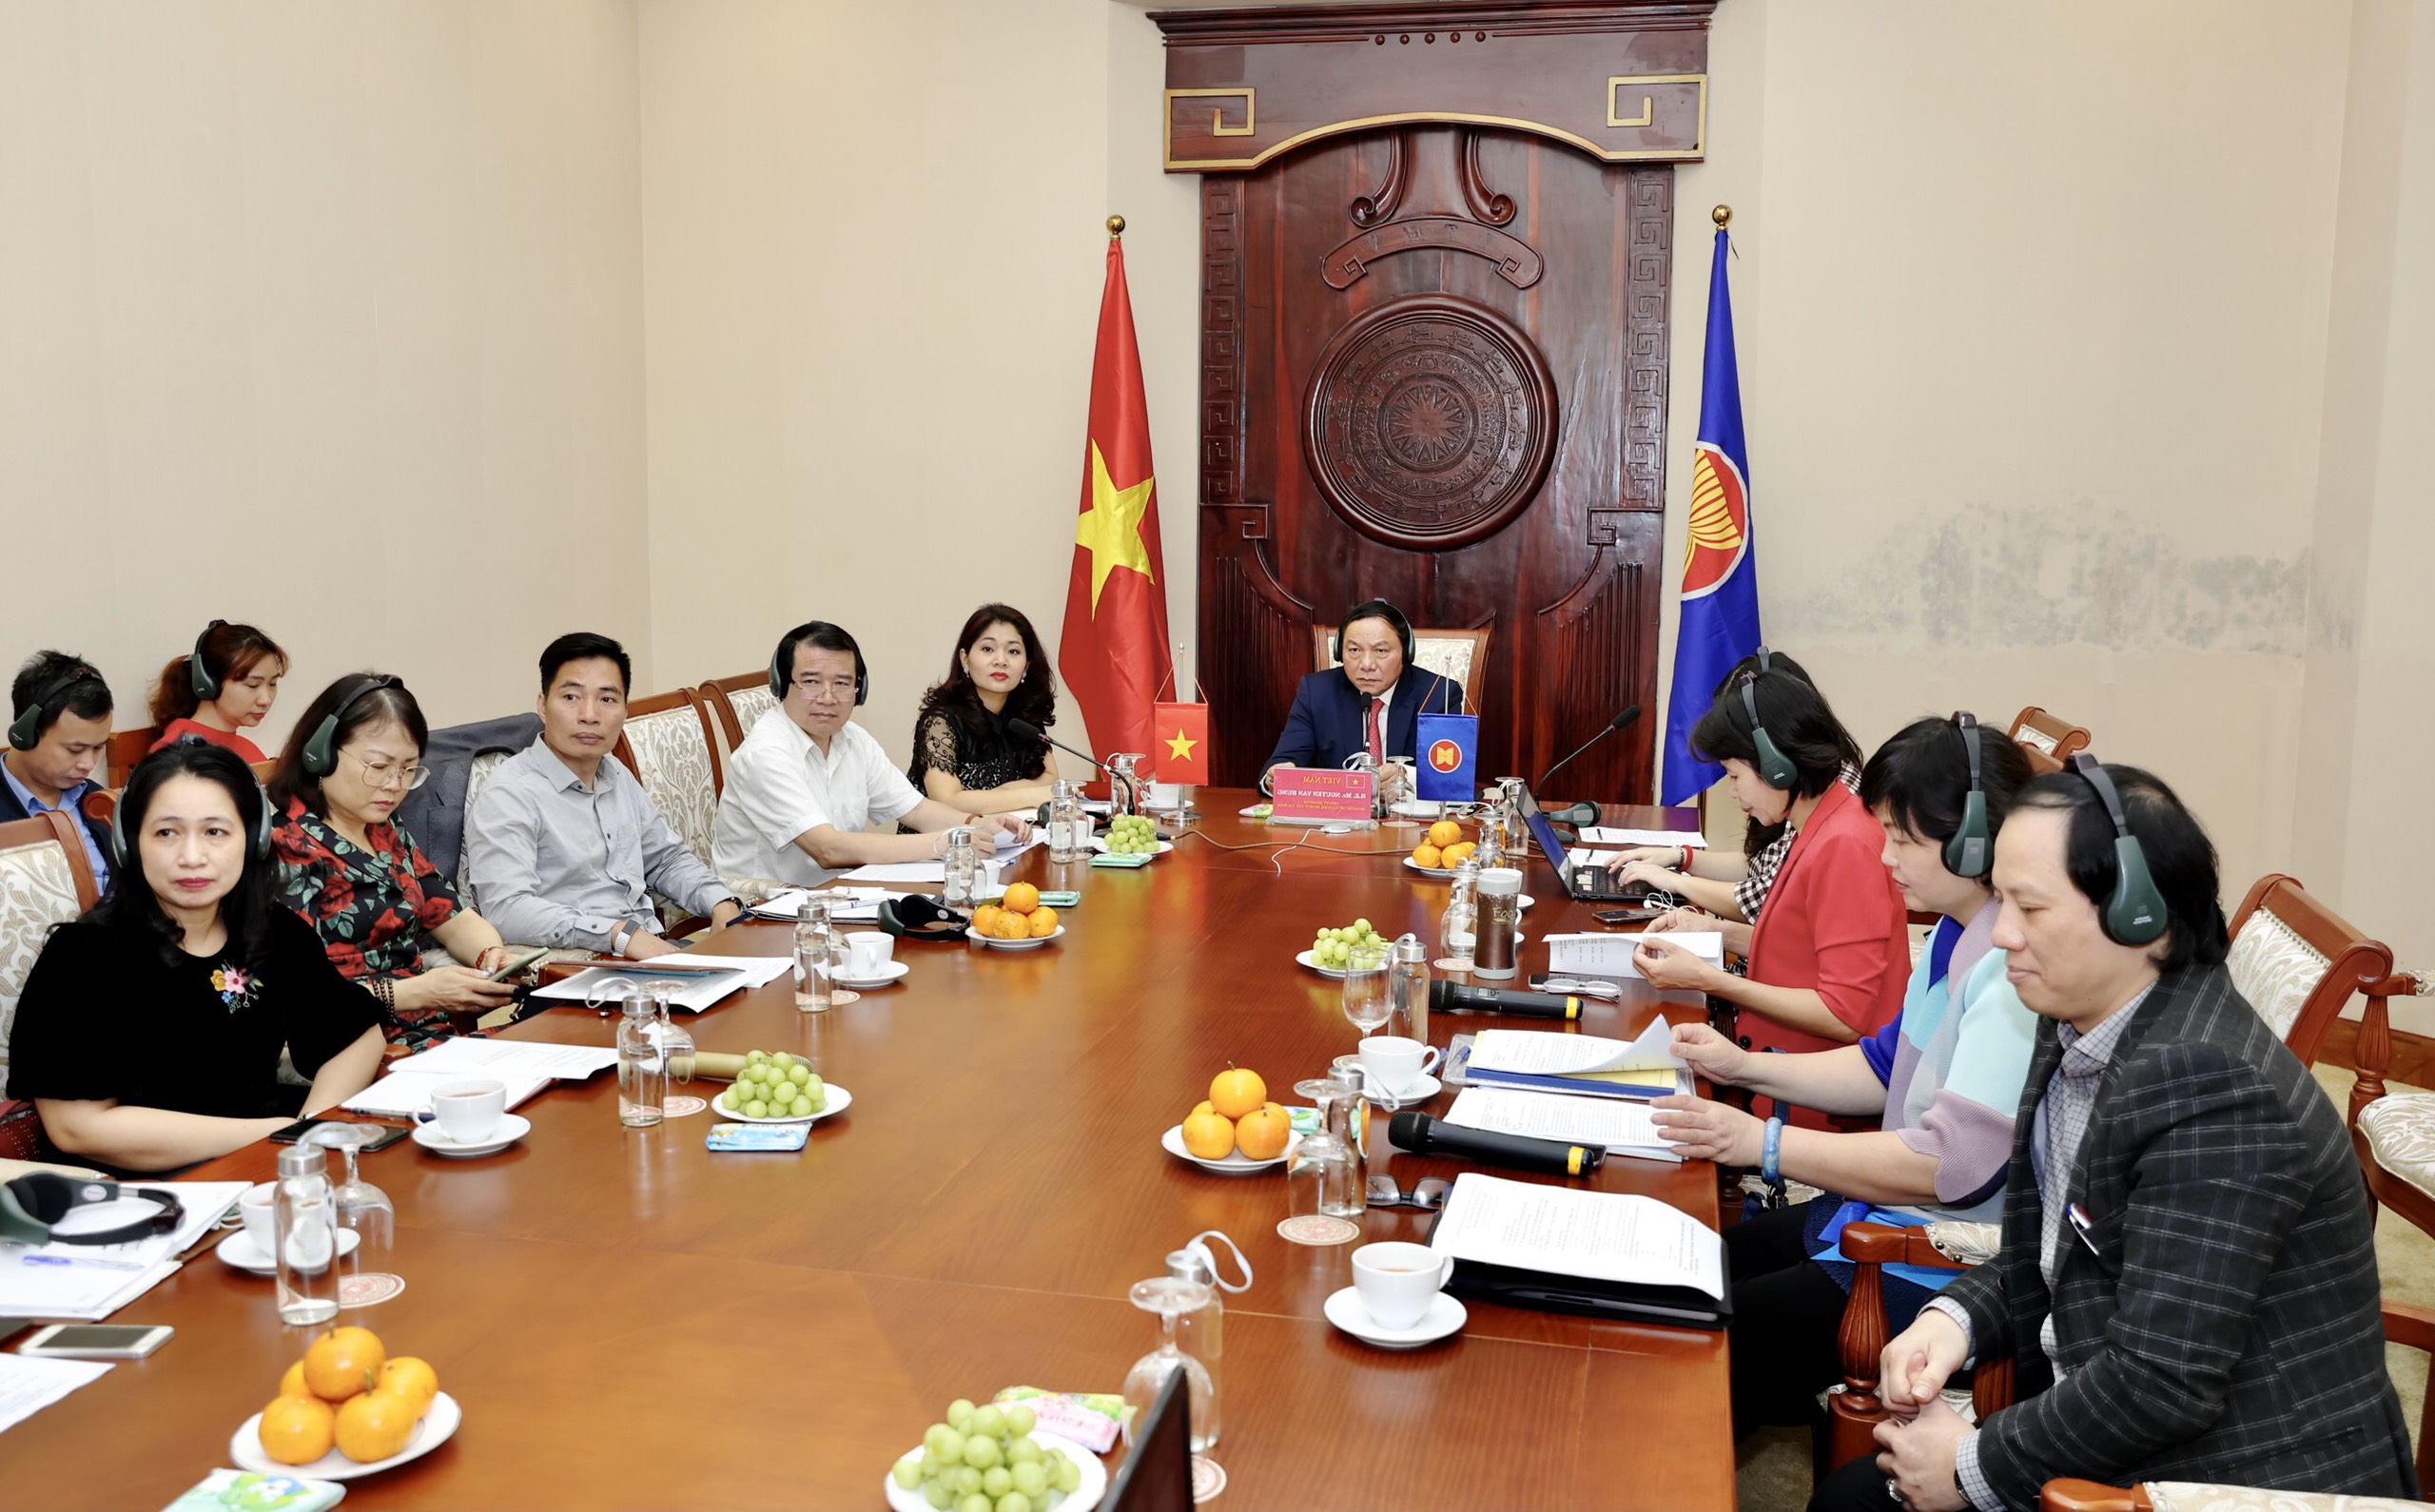 Thứ trưởng Bộ Văn hoá, Thể thao và Du lịch Nguyễn Văn Hùng chủ trì phiên họp trực tuyến với Hội đồng kinh doanh Hoa Kỳ - ASEAN